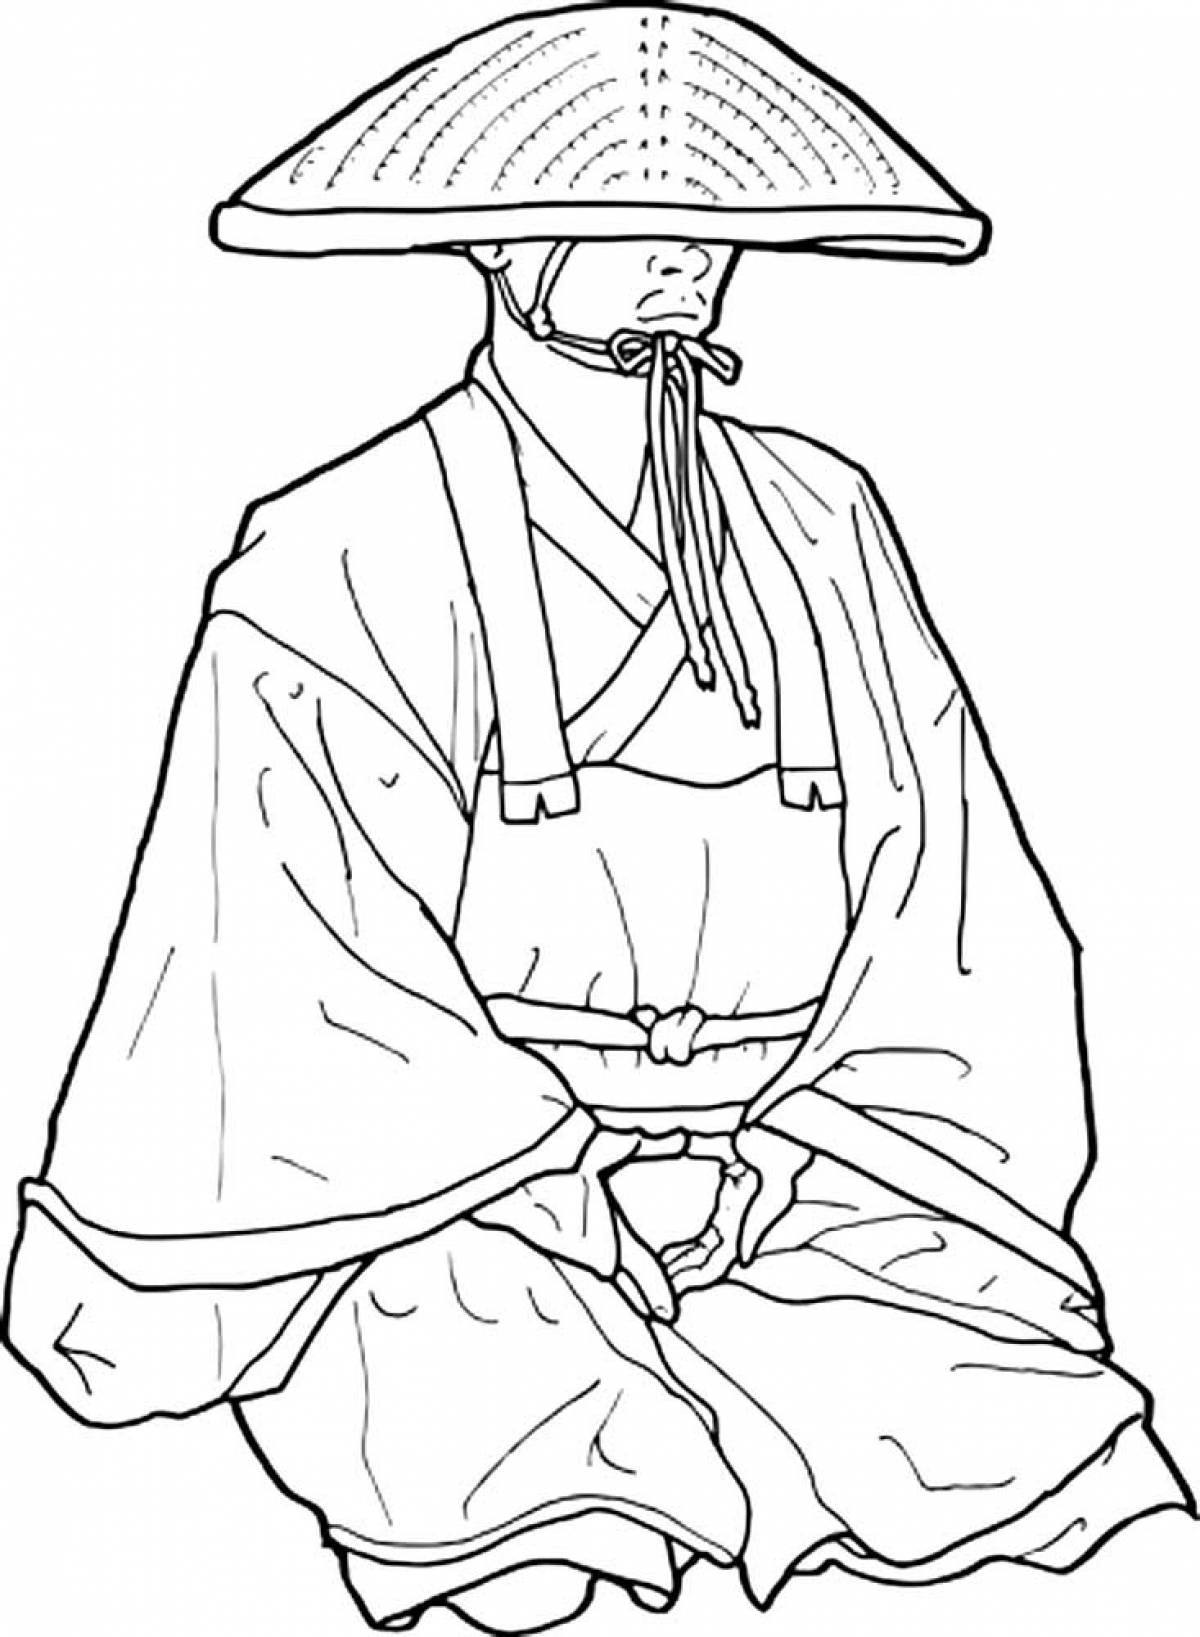 Japanese man